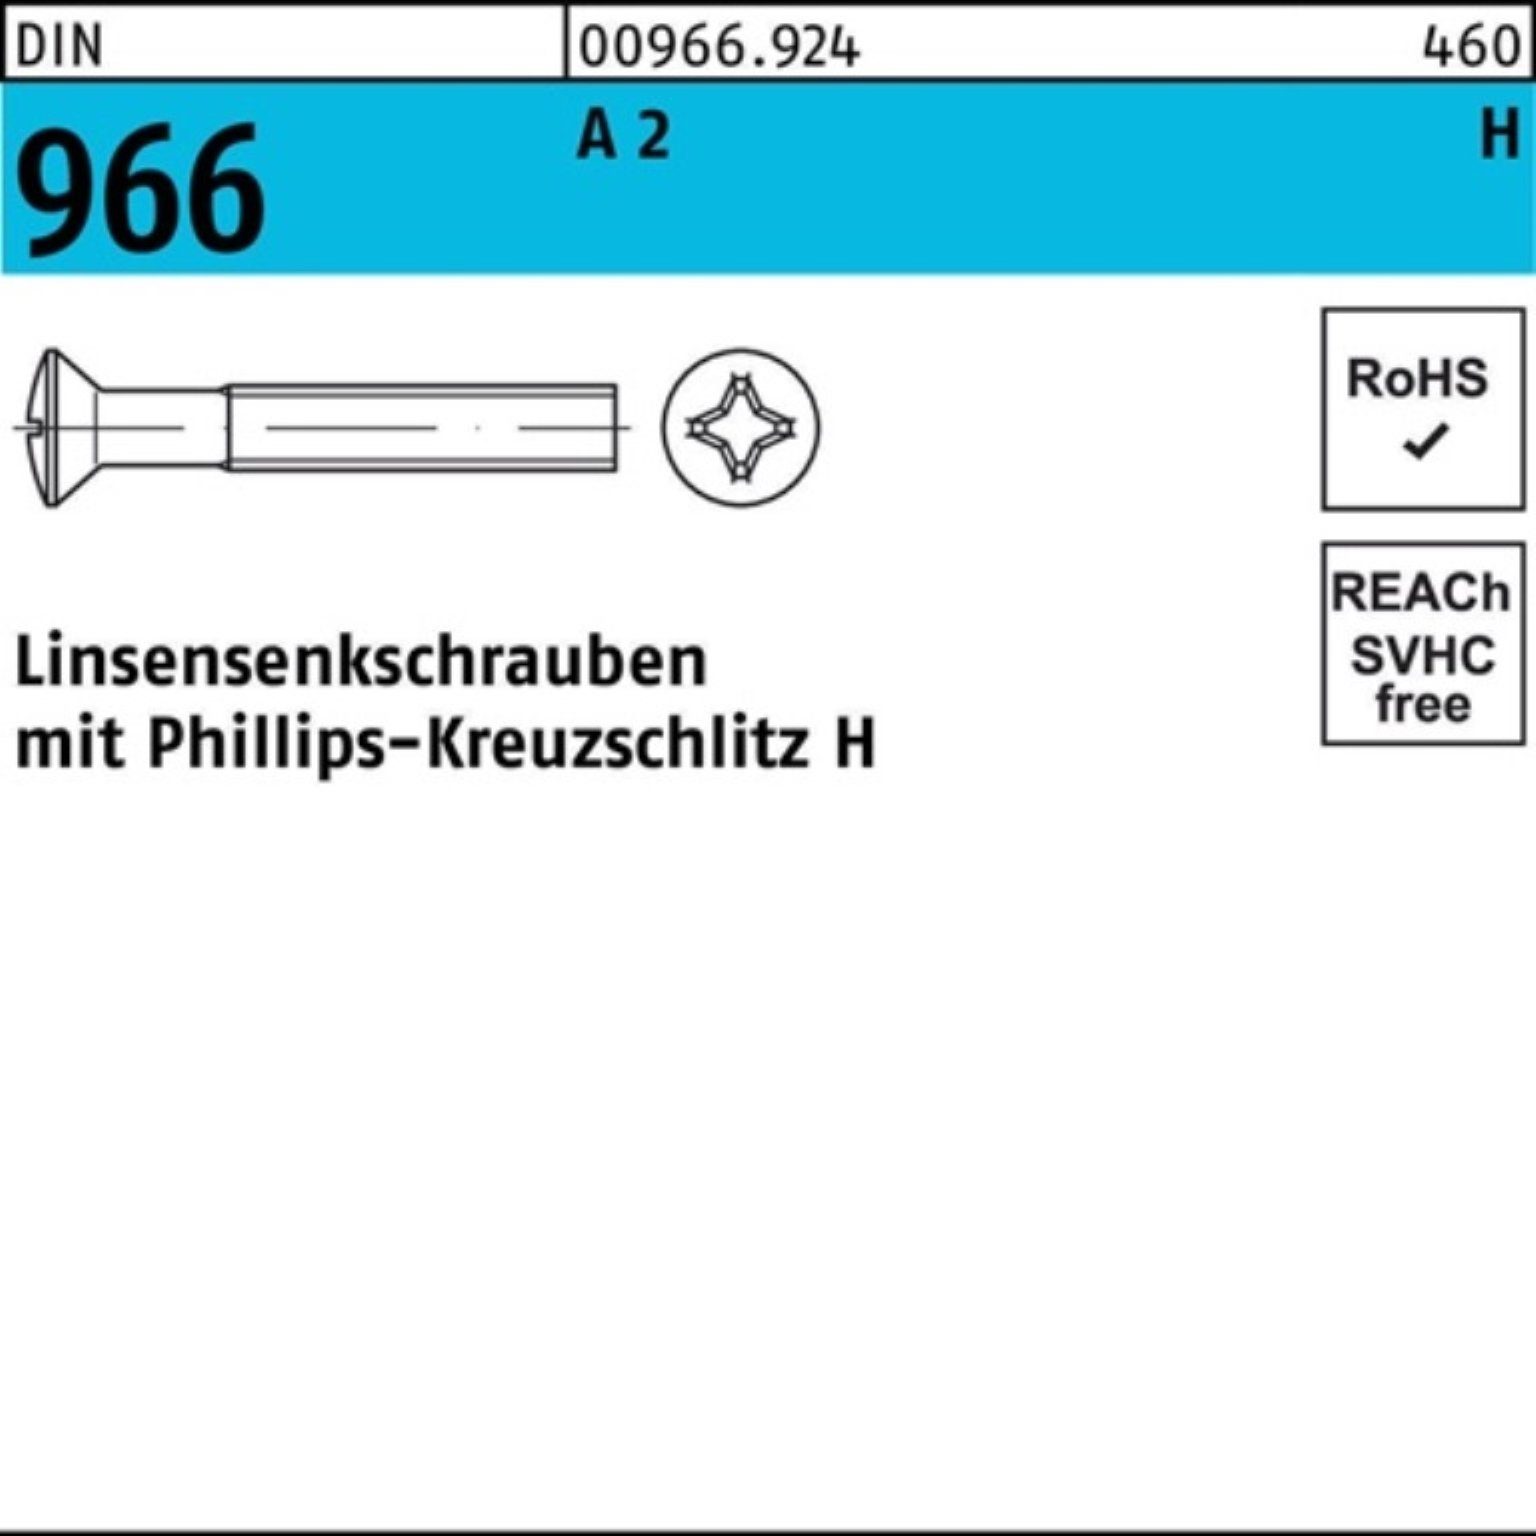 Reyher Linsenschraube 200 Pack Kreuzschlitz 12-H DIN PH 200er Linsensenkschraube 966 M8x 2 A